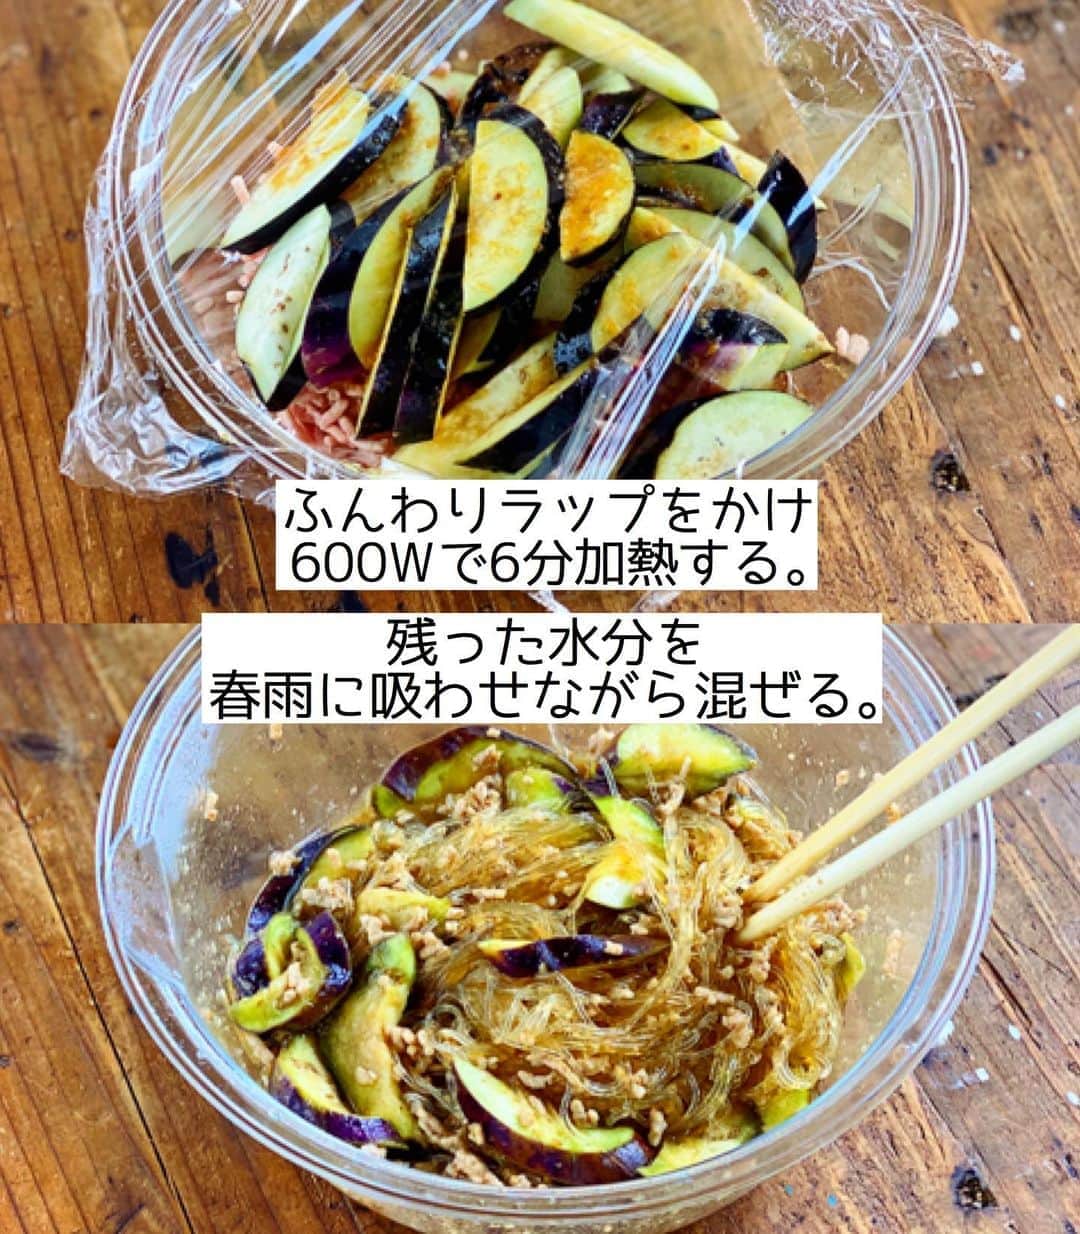 Mizuki【料理ブロガー・簡単レシピ】さんのインスタグラム写真 - (Mizuki【料理ブロガー・簡単レシピ】Instagram)「・﻿ 【レシピ】ーーーーーーーーーーーーーーーーー﻿ ♡レンジde6分♡ひき肉となすのチャプチェ風♡﻿ ーーーーーーーーーーーーーーーーーーーーーー﻿ ﻿ ﻿ ﻿ おはようございます(*^^*)﻿ ﻿ 今日ご紹介させていただくのは﻿ レンジでできるチャプチェ風♡﻿ ひき肉となすをたっぷり加えて﻿ しっかり食べ応えを出しました♩﻿ ﻿ 作り方は超簡単(*´艸`)﻿ 春雨は戻さない！﻿ 味付けは焼肉のたれで失敗なし！﻿ 加熱はレンジでたったの6分！﻿ ﻿ 思い立ったらすぐにできるので﻿ お気軽にお試し下さいね(*^^*)﻿ ﻿ ﻿ ﻿ ーーーーーーーーーーーーーーーーーーーー﻿ 【2人分】﻿ 豚ひき肉...100g﻿ なす...2本(150g)﻿ 春雨...50g﻿ ●水...150ml﻿ ●焼肉のたれ...大3﻿ ●ごま油...小1﻿ ●鶏がらスープ...小1/2﻿ ●生姜チューブ...2cm﻿ (好みで)万能ねぎ・ラー油...各適量﻿ ﻿ 1.春雨は(長ければ)長さを半分に切る。なすは縦半分に切って1cm幅の斜め切りにし、水に3分晒して水気を切る。●は合わせておく。﻿ 2.耐熱ボウルに春雨、ひき肉、なすの順に入れ、●をまわしかける。ふんわりラップをかけ、600Wのレンジで6分加熱する。﻿ 3.取り出してよく混ぜ、斜め切りにしたねぎとラー油をかける。﻿ ーーーーーーーーーーーーーーーーーーーー﻿ ﻿ ﻿ ﻿ 《ポイント》﻿ ♦︎春雨は乾燥のまま使用します♩﻿ ♦︎レンチン後、残った水分を春雨に吸わせるようによく混ぜて下さい♩﻿ ﻿ ﻿ ﻿ ﻿ ﻿ ﻿ ＿＿＿＿＿＿＿＿＿＿＿＿＿＿＿＿＿＿＿﻿ 📕6刷重版しました📕﻿ 簡単・時短！ 毎日のごはんがラクになる﻿ ✨🦋 【 #Mizukiの今どき和食 】🦋✨﻿ ＿＿＿＿＿＿＿＿＿＿＿＿＿＿＿＿＿＿＿﻿ なるべく少ない材料で﻿ 手間も時間も省きながら﻿ 簡単にできるおいしい和食レシピ♩﻿ 簡単に失敗なくマスターできる一冊で﻿ もっと気軽に、カジュアルに﻿ 和食を楽しんで下さいね(*^^*)﻿ ＿＿＿＿＿＿＿＿＿＿＿＿＿＿＿＿＿＿＿﻿ ﻿ ﻿ ﻿ ＿＿＿＿＿＿＿＿＿＿＿＿＿＿＿＿＿＿＿﻿ 🎀6刷重版しました🎀﻿ 混ぜて焼くだけ。はじめてでも失敗しない！﻿ 【#ホットケーキミックスのお菓子 】﻿ ﻿ 一冊まるっとホケミスイーツ♩﻿ 普段のおやつから﻿ 特別な日にも使えるレシピを﻿ この一冊に詰め込みました(*^^*)﻿ ホットケーキミックスを使えば﻿ 簡単に本格的なお菓子が作れますよ♡﻿ ＿＿＿＿＿＿＿＿＿＿＿＿＿＿＿＿＿﻿ ﻿ ﻿ ﻿ ﻿ ￣￣￣￣￣￣￣￣￣￣￣￣￣￣￣￣￣￣﻿ レシピを作って下さった際や﻿ レシピ本についてのご投稿には﻿ タグ付け( @mizuki_31cafe )して﻿ お知らせいただけると嬉しいです😊💕﻿ ＿＿＿＿＿＿＿＿＿＿＿＿＿＿＿＿＿＿﻿ ﻿ ﻿ ﻿ ﻿ ﻿ #レンジ#チャプチェ#なす#焼肉のたれ#ひき肉#Mizuki#簡単レシピ#時短レシピ#節約レシピ#料理#レシピ#フーディーテーブル#マカロニメイト#おうちごはん#デリスタグラマー#料理好きな人と繋がりたい#食べ物#料理記録#おうちごはんlover#写真好きな人と繋がりたい#foodpic#cooking#recipe#lin_stagrammer#foodporn#yummy#ひき肉となすのチャプチェ風m」8月10日 7時10分 - mizuki_31cafe